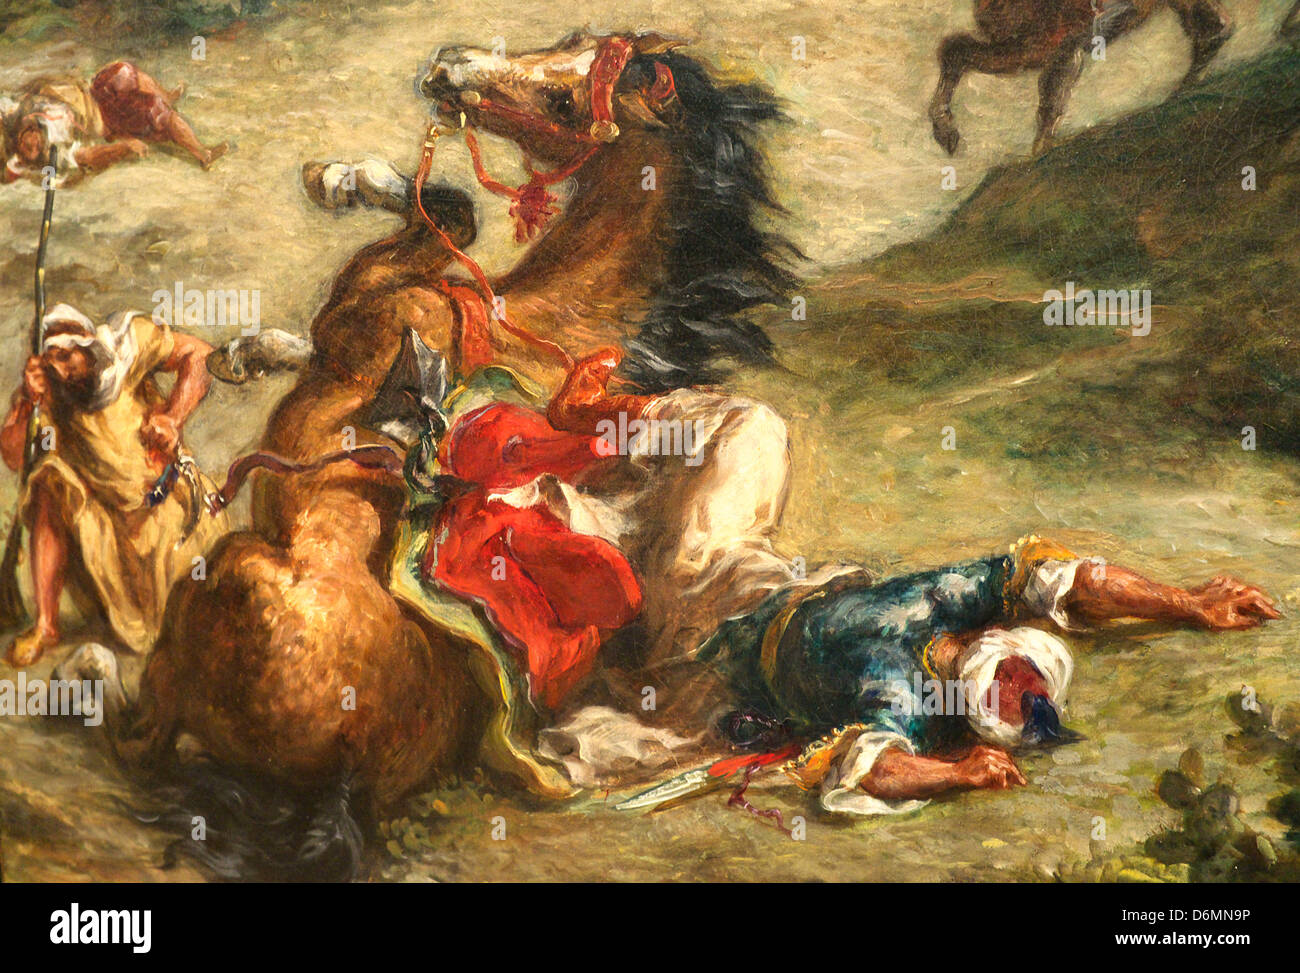 Kunstdruck Fantasia Arabe 01716 Encadré Eugene Delacroix Arabe Combat Chevaux B A3 